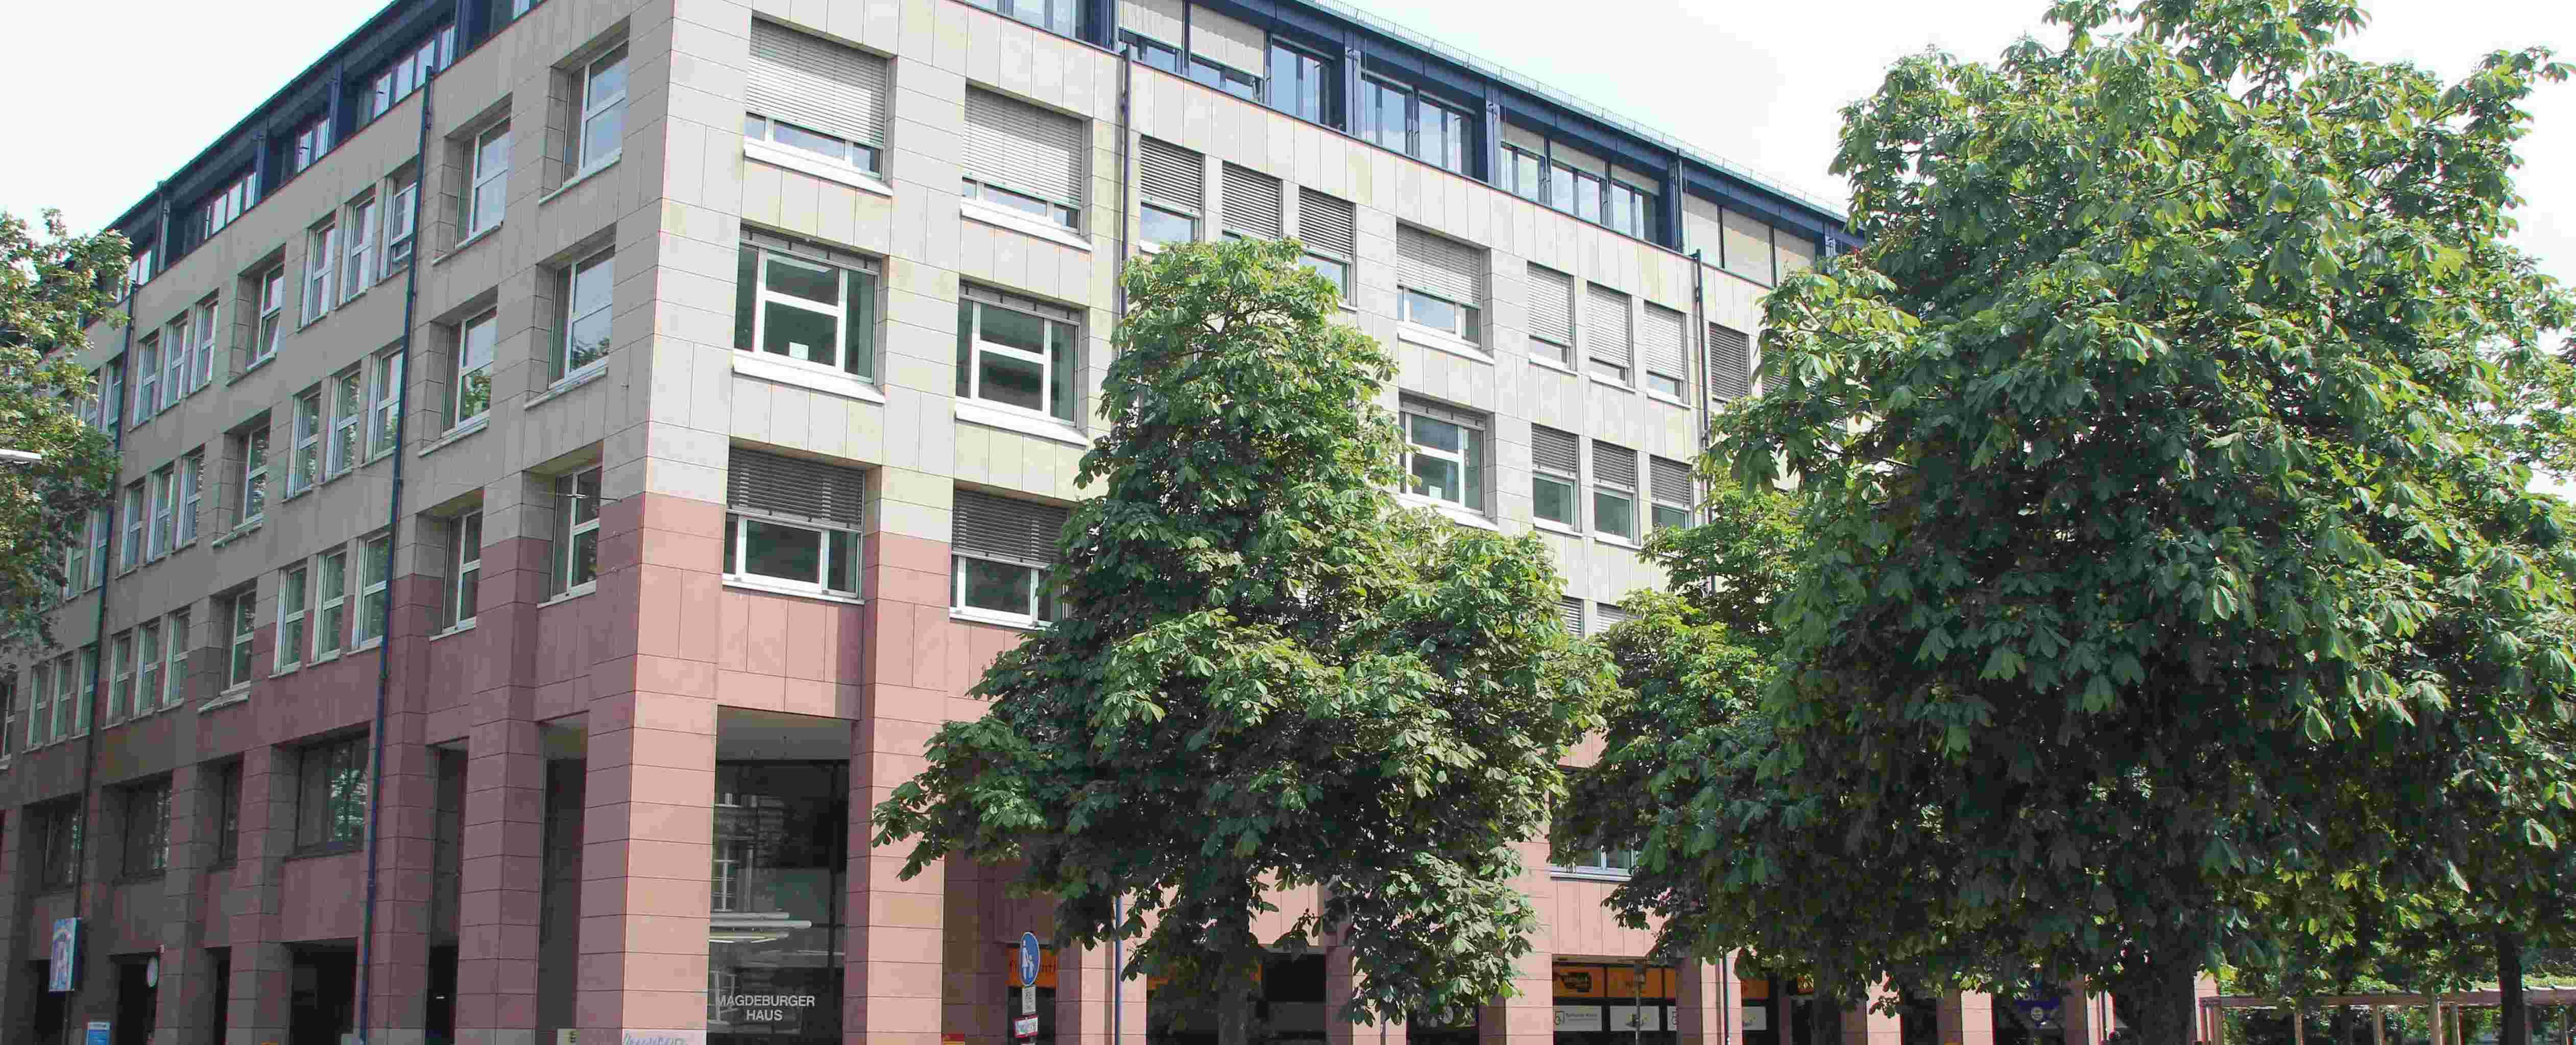 Bild zeigt das Seminargebäude in der Kaiserallee 11